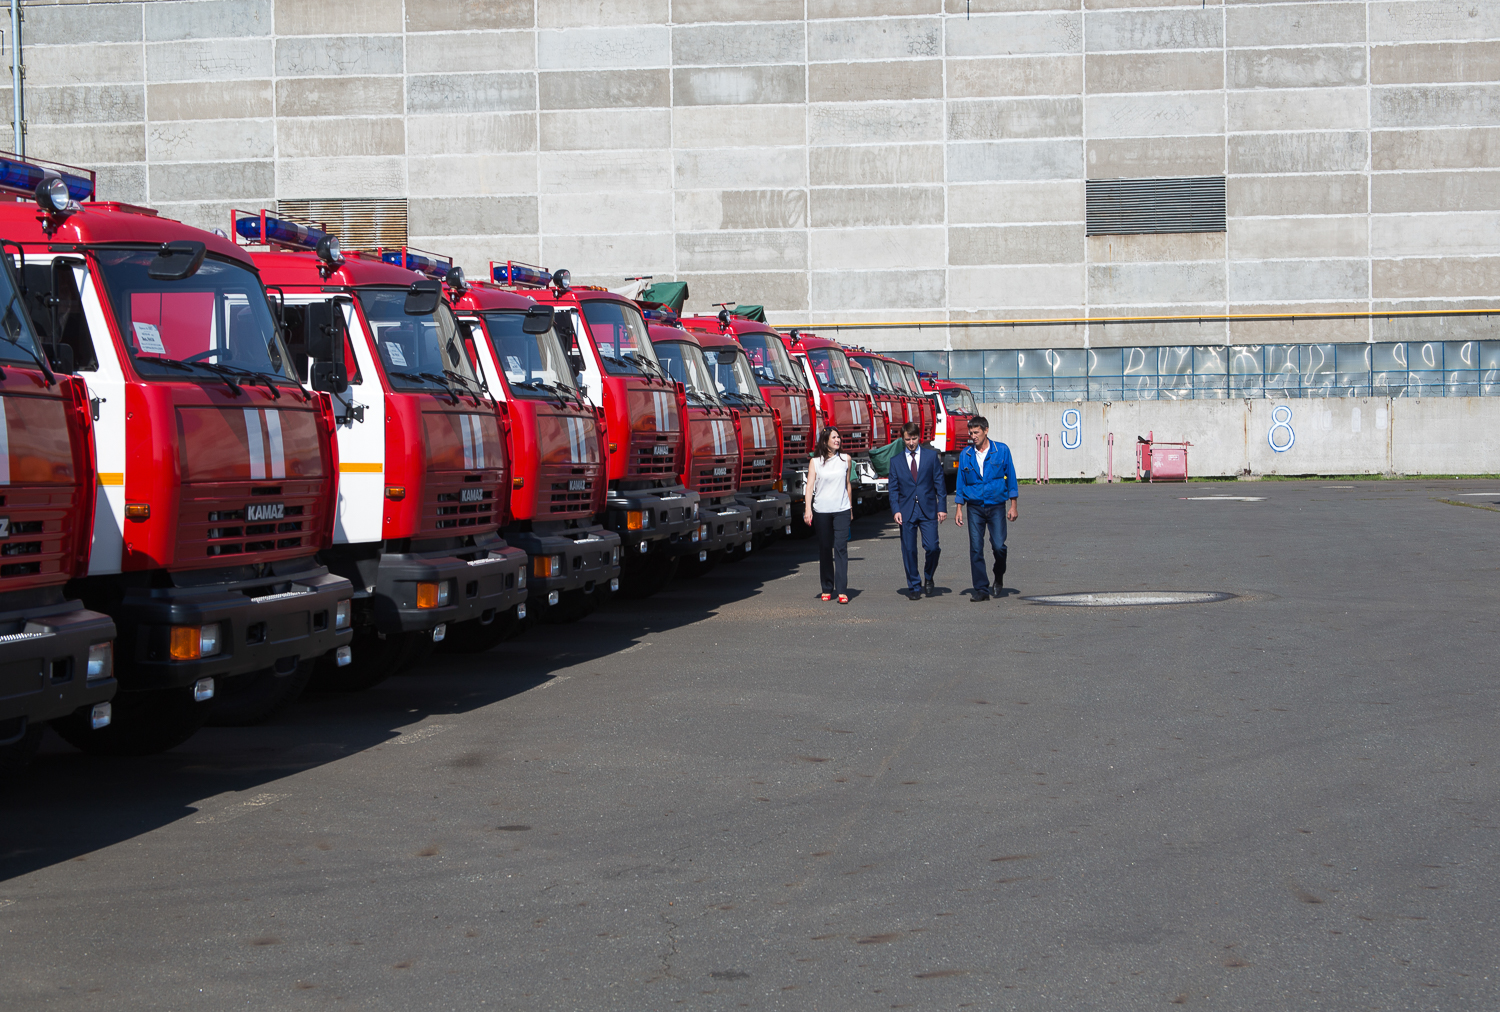 КАМАЗ передал Туркменистану партию пожарных автомобилей